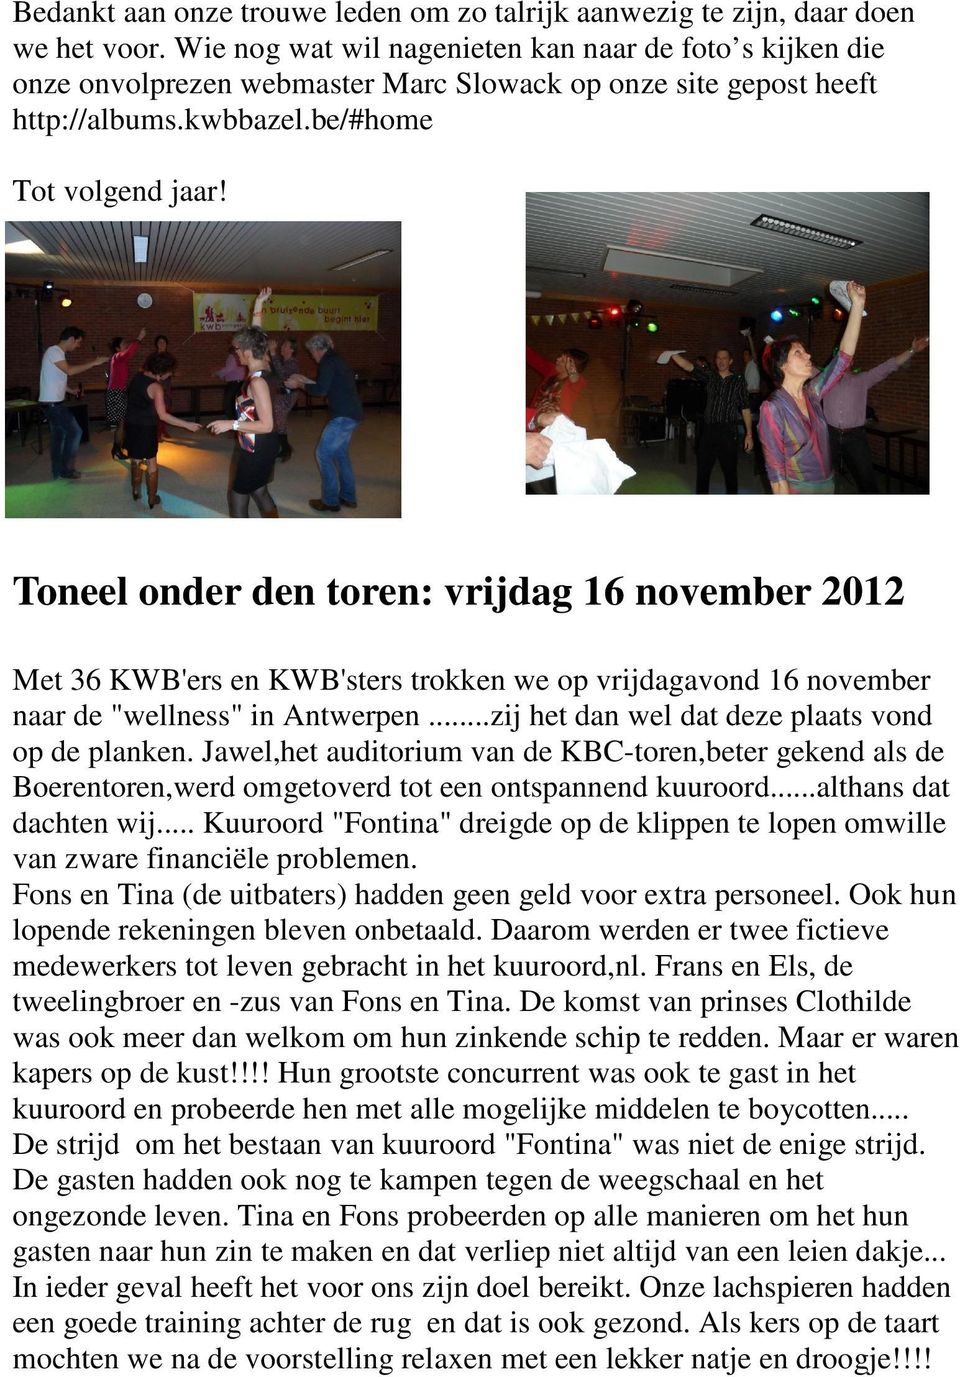 Toneel onder den toren: vrijdag 16 november 2012 Met 36 KWB'ers en KWB'sters trokken we op vrijdagavond 16 november naar de "wellness" in Antwerpen...zij het dan wel dat deze plaats vond op de planken.